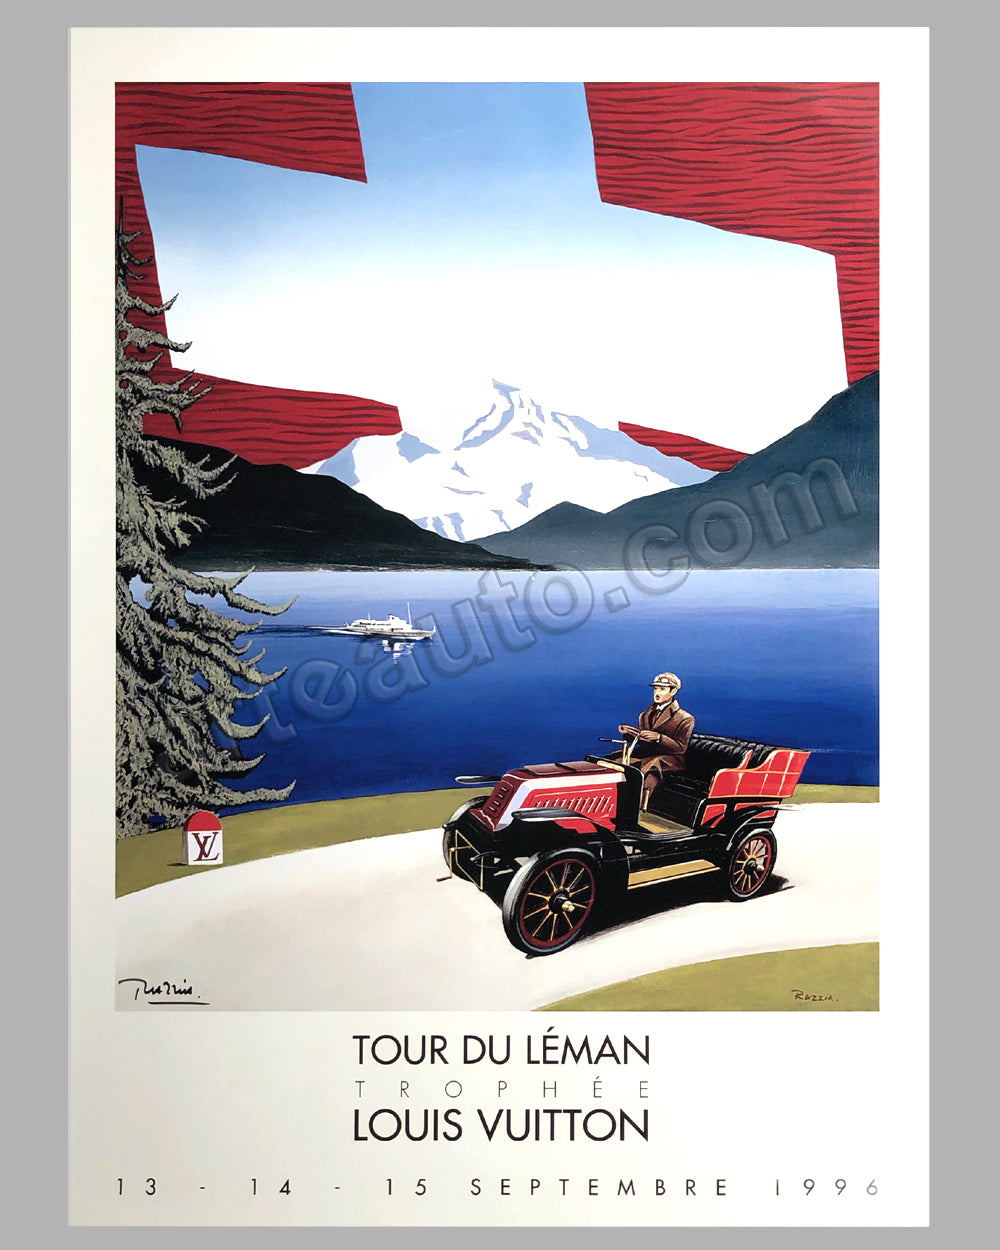 Razzia (Gérard Courbouleix–Dénériaz) - 1992 Original poster by Razzia -  Classic Automobiles and Louis Vuitton For Sale at 1stDibs